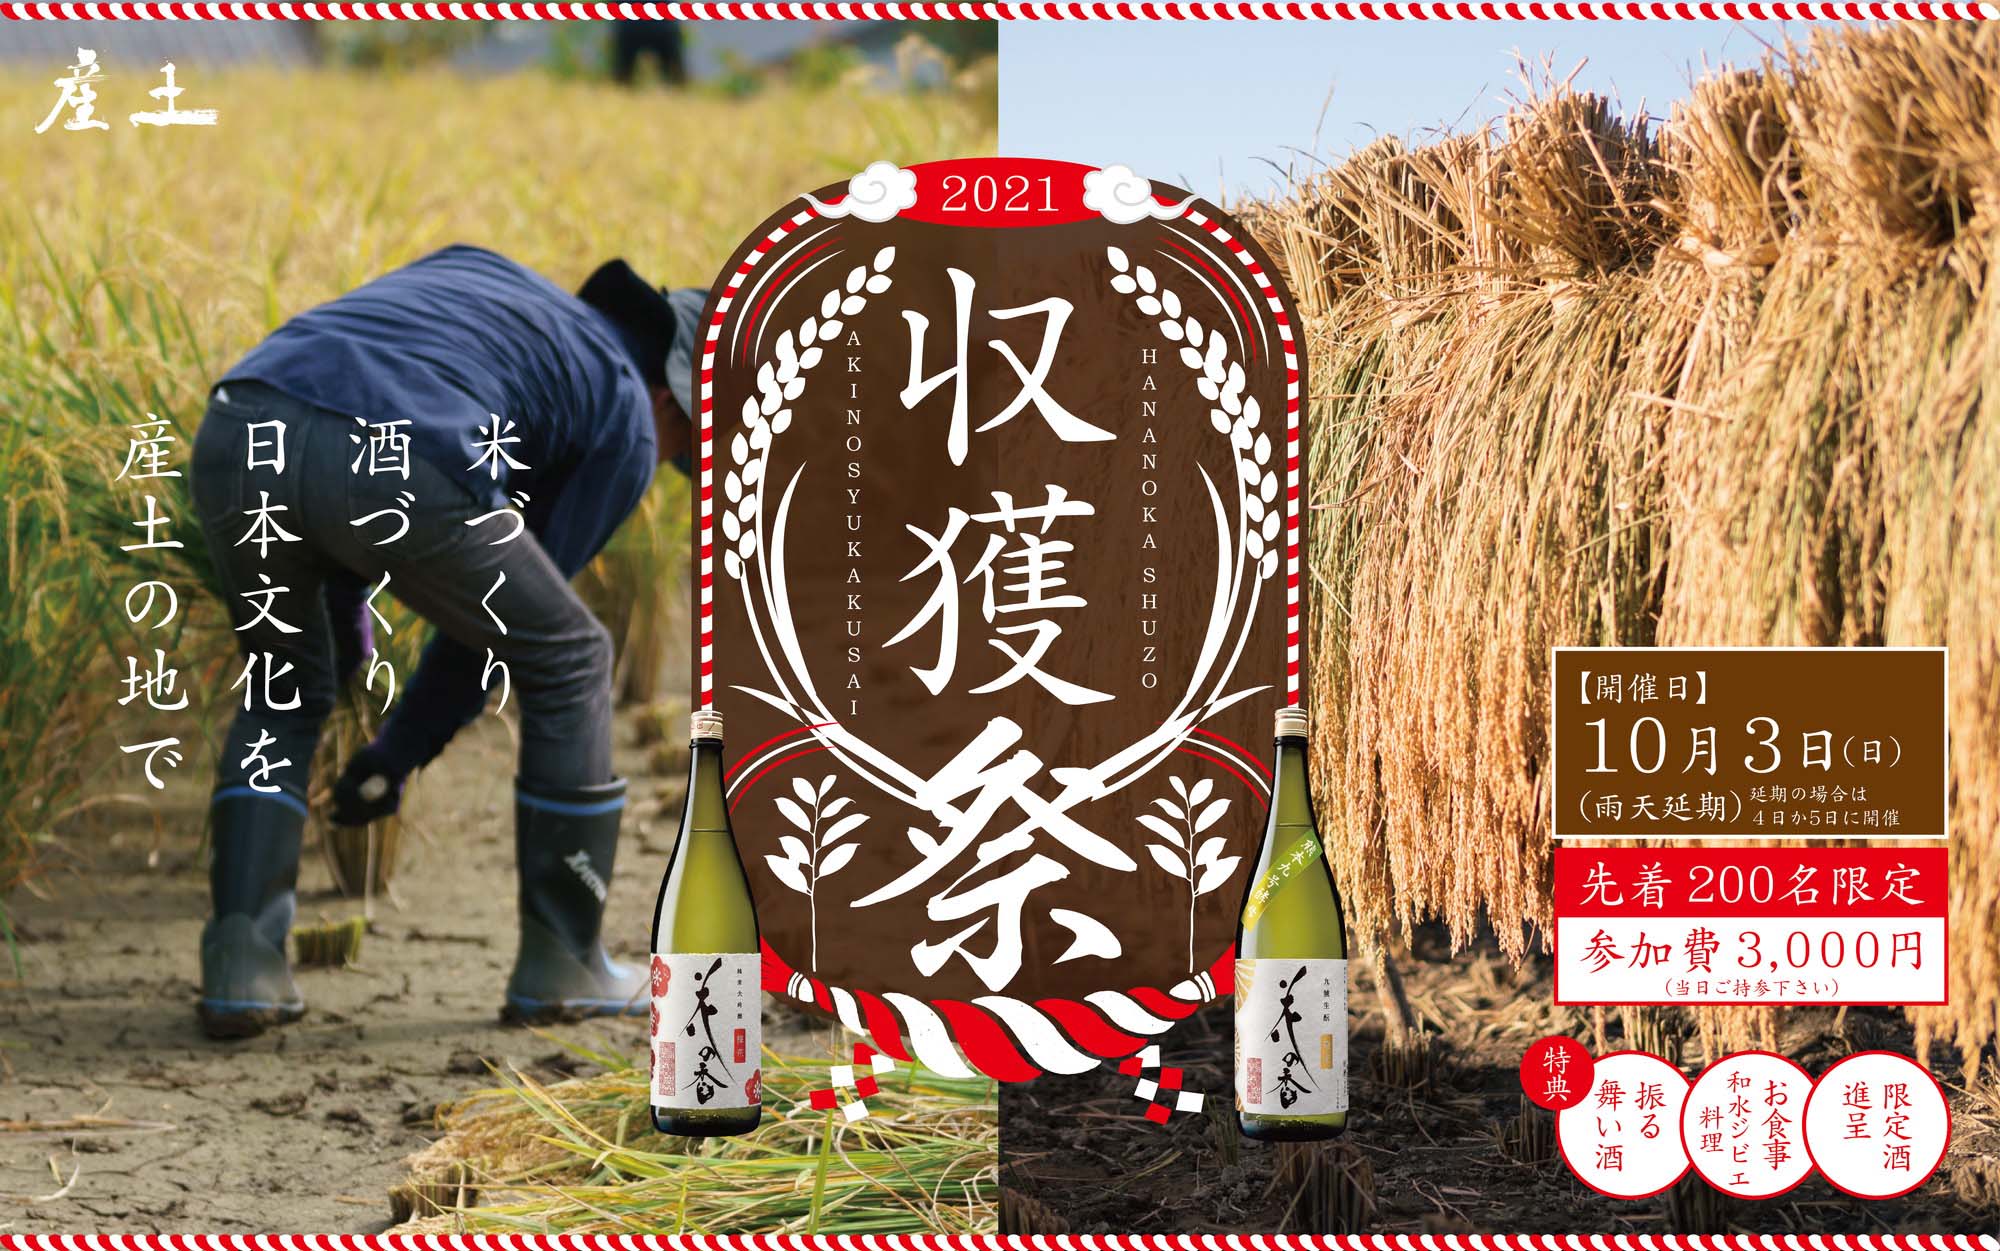 幻の米 『穂増』の収穫祭開催